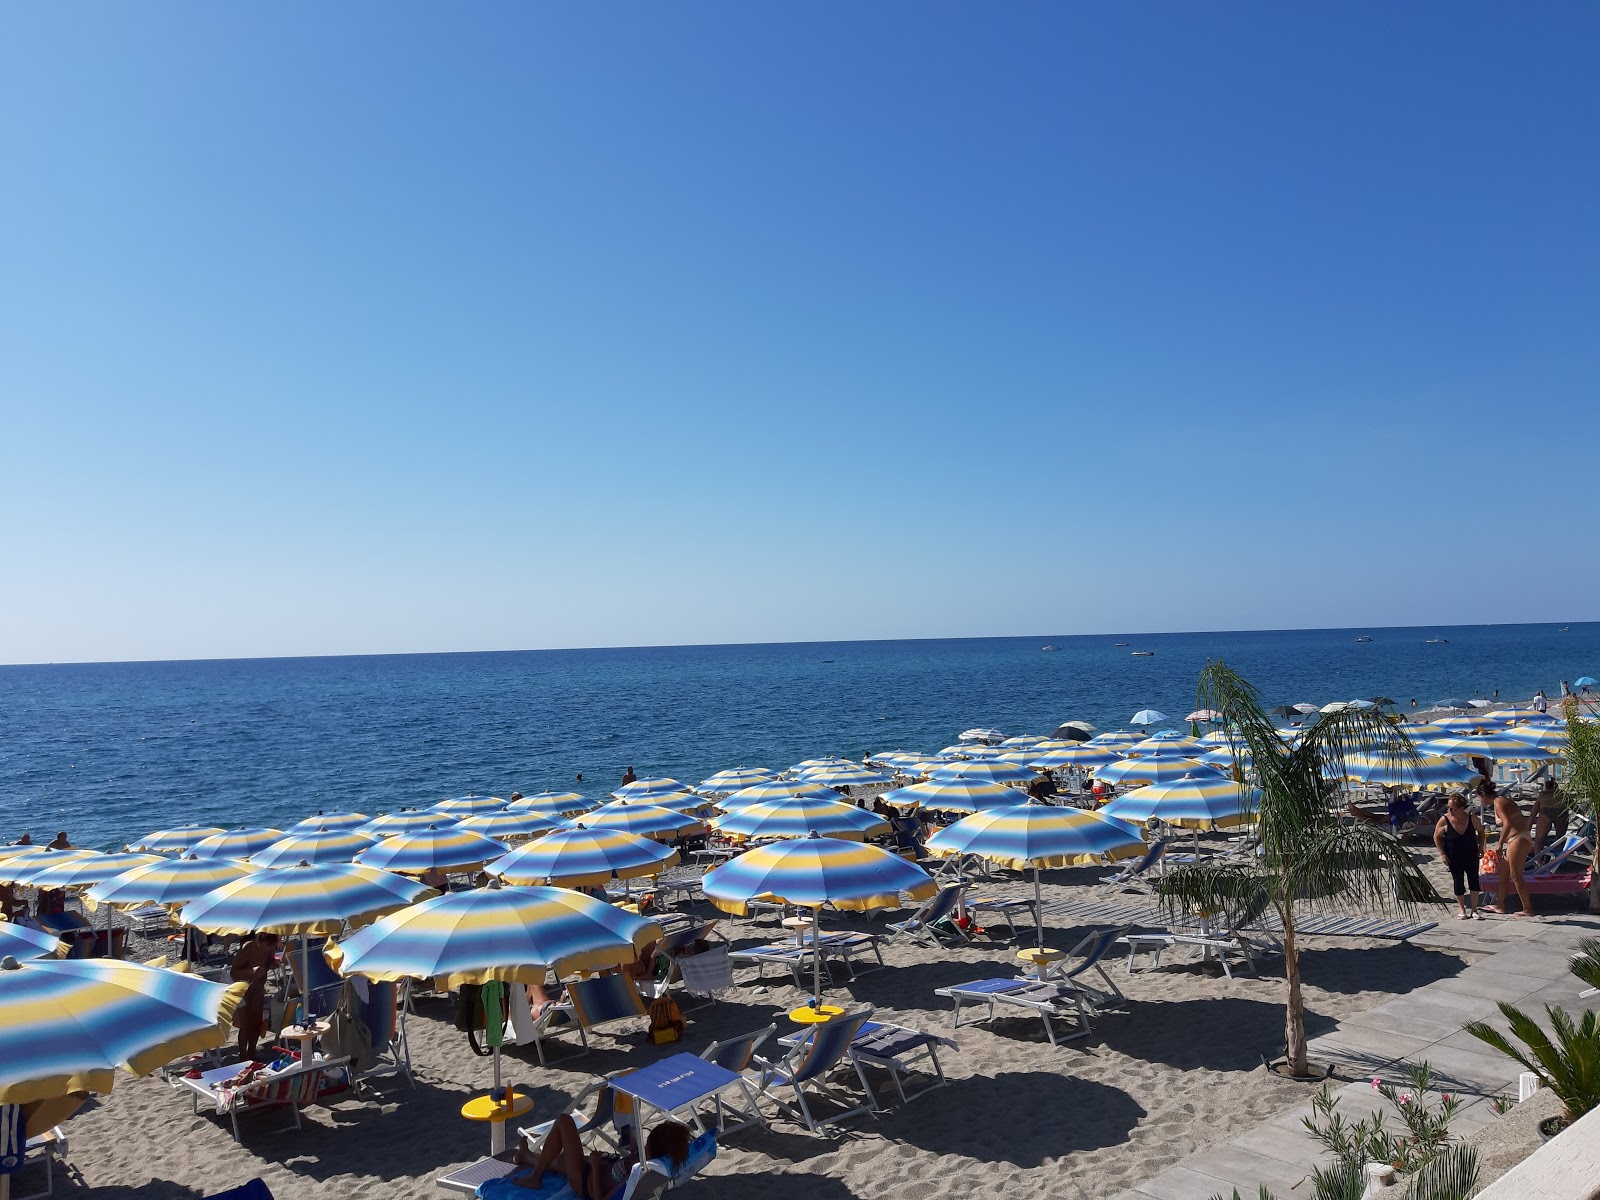 Locri beach'in fotoğrafı gri ince çakıl taş yüzey ile